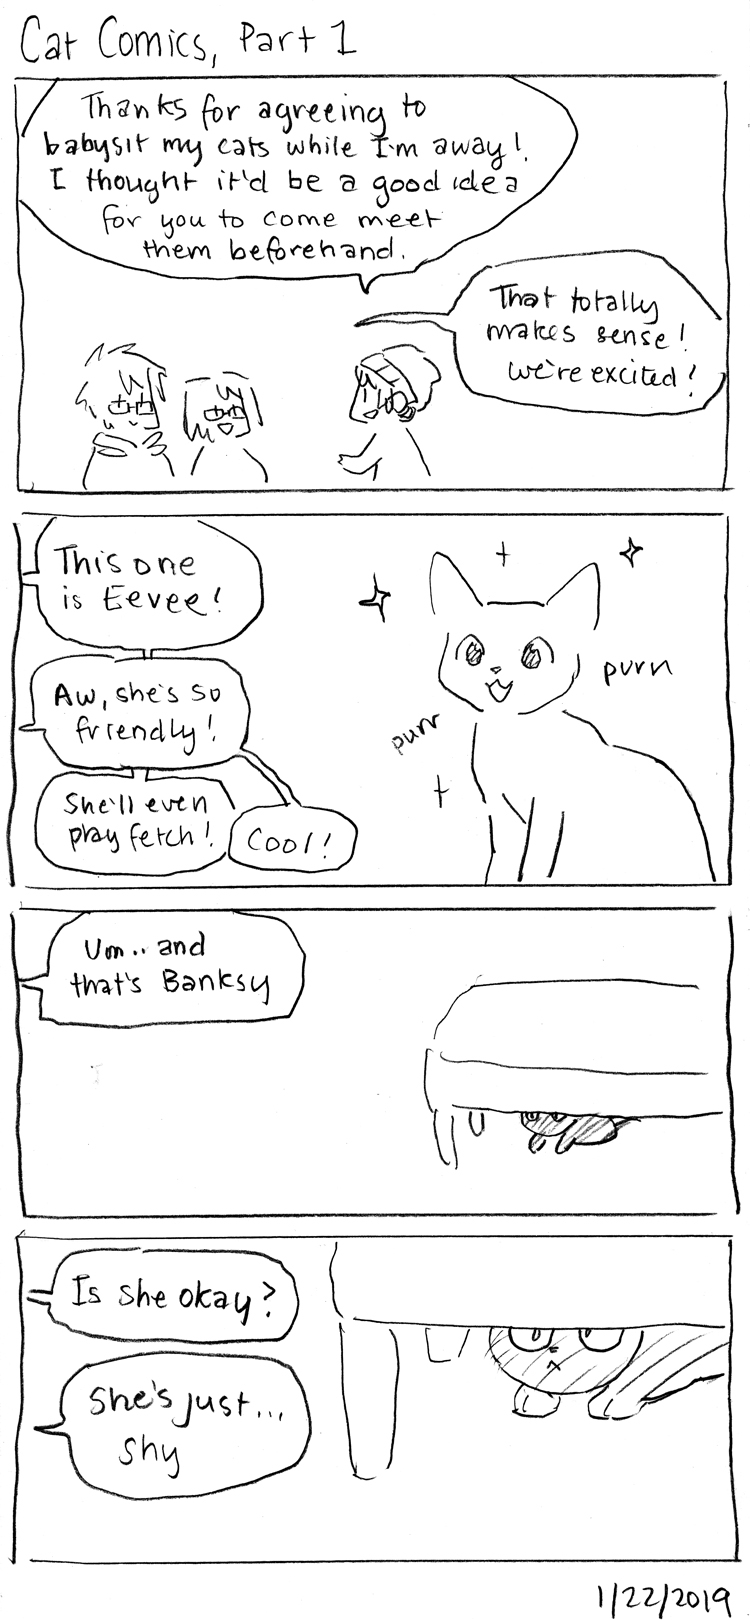 Cat Comics, Part 1